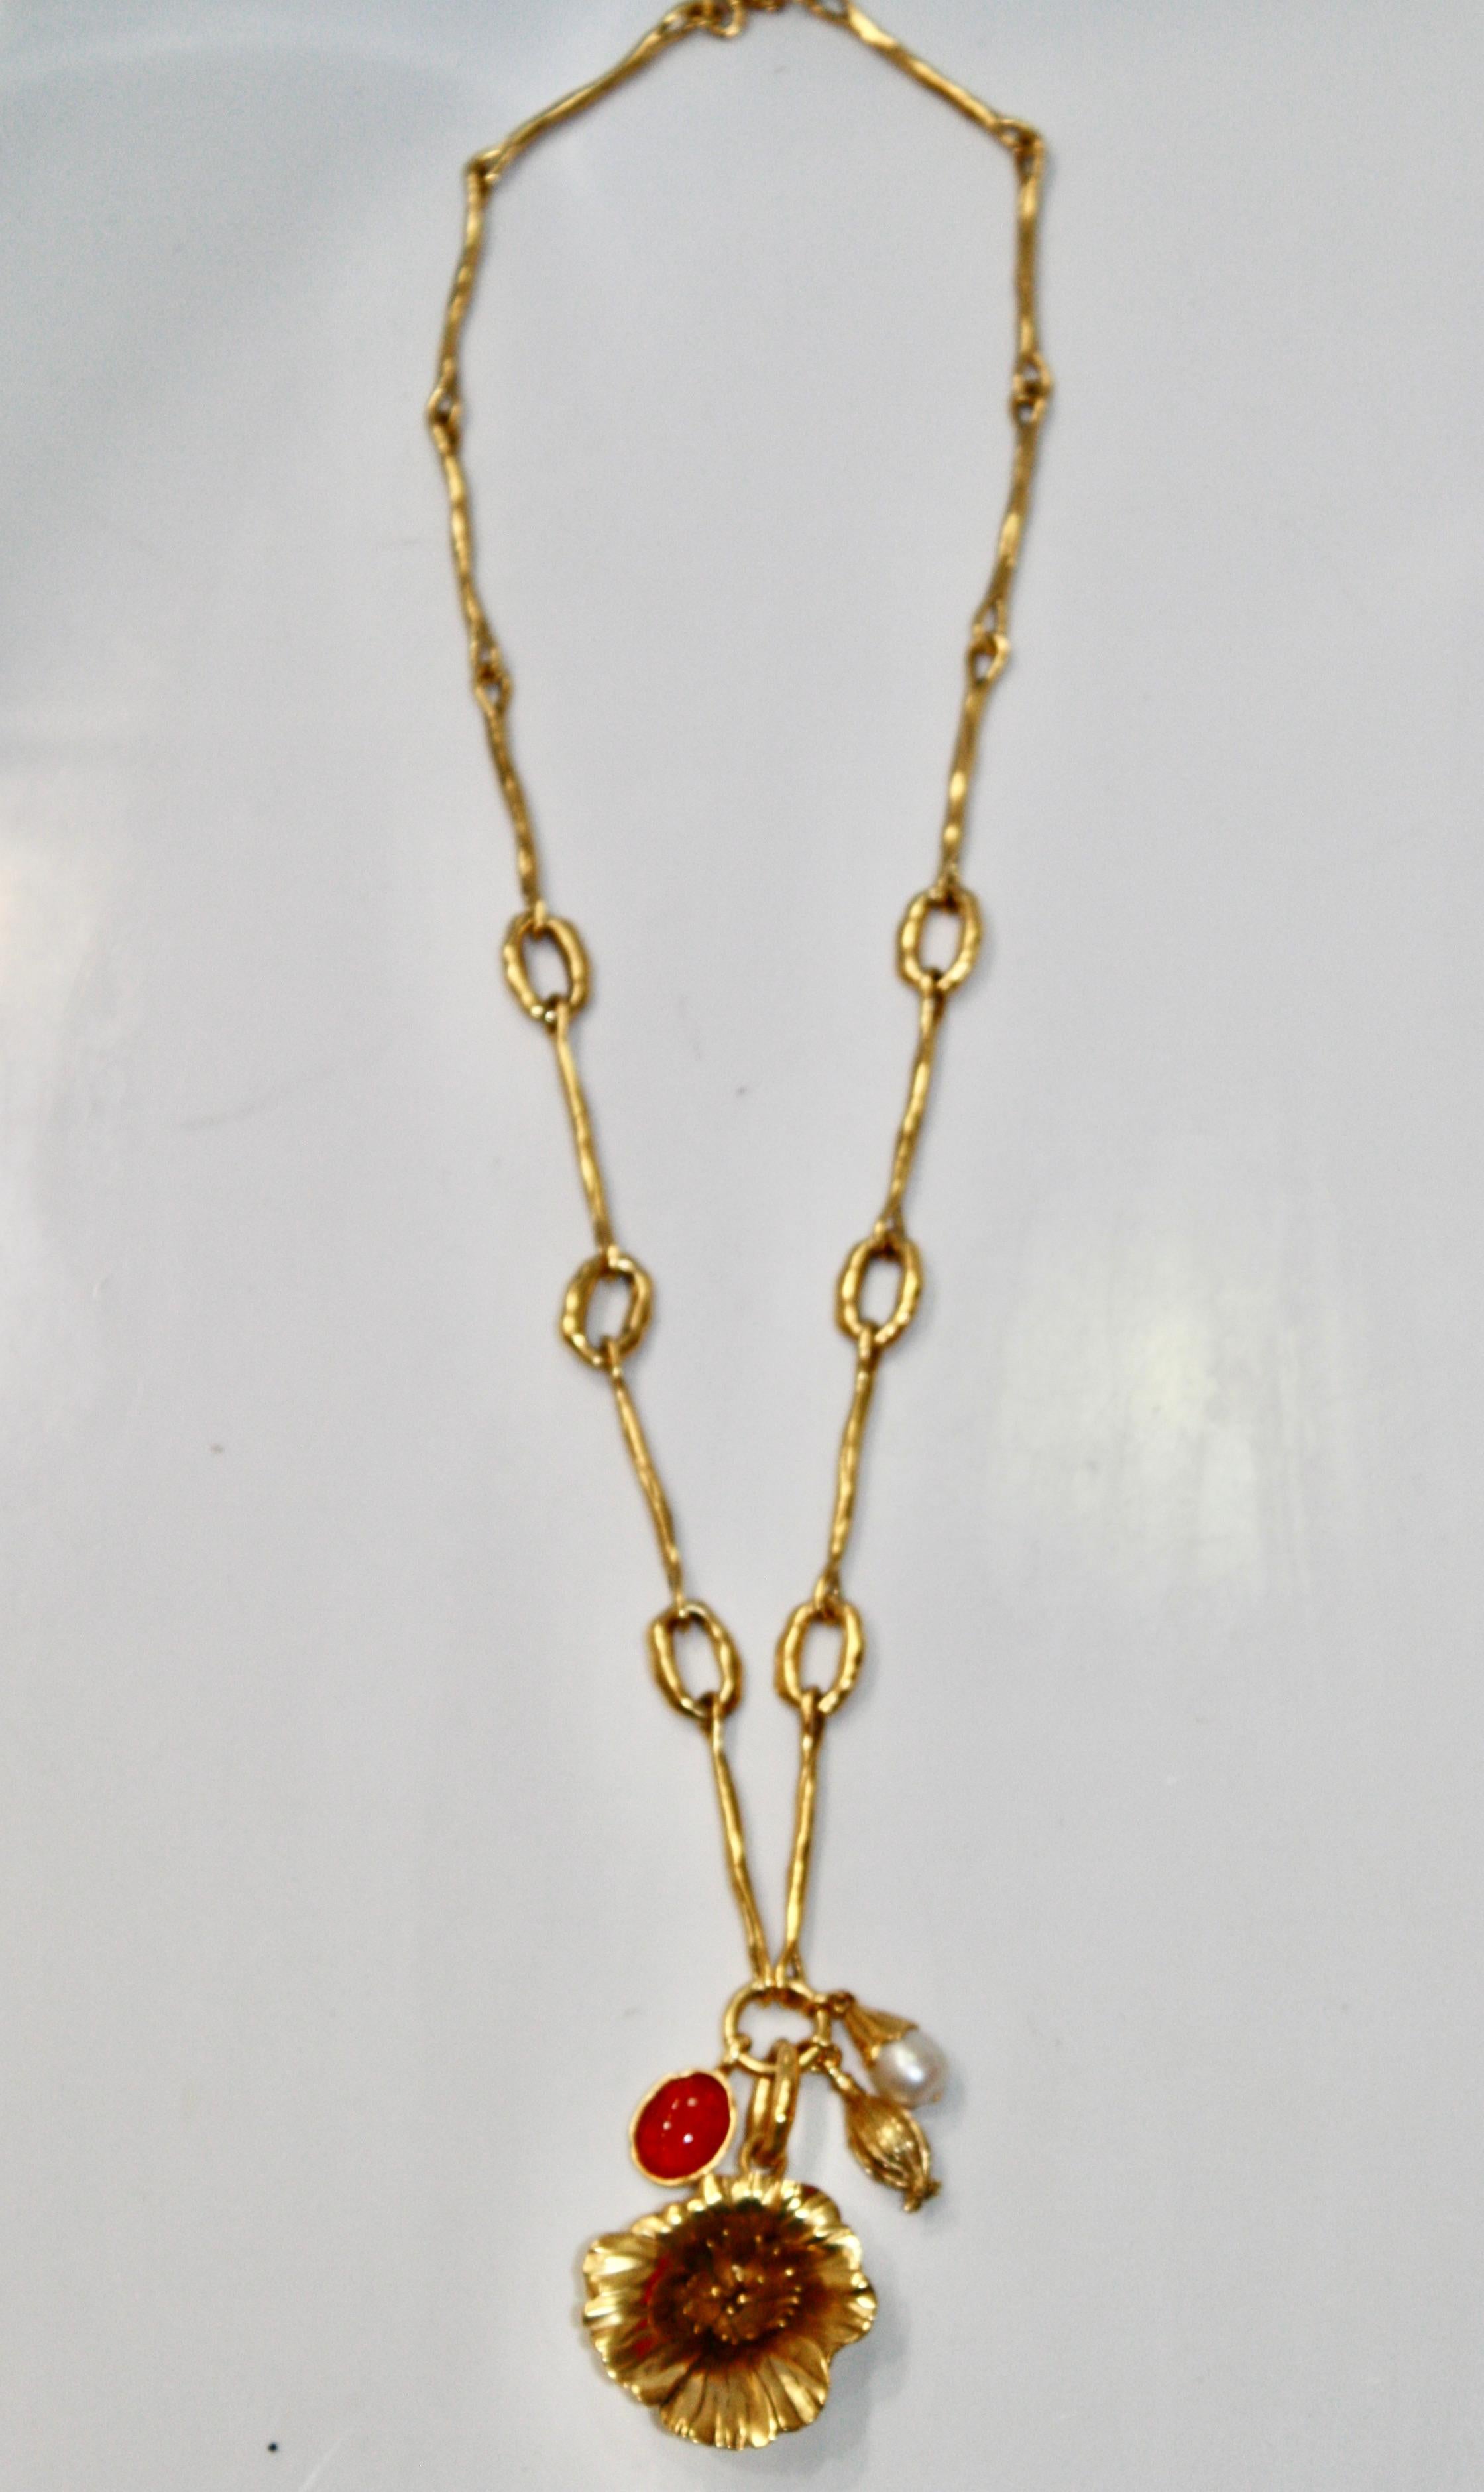 Ce collier fleur de pavot est composé d'un bouton de fleur sur le point d'éclore, d'une eau douce baroque, d'un cabochon en cristal de roche teinté grenadine.
Le collier est en bronze trempé dans un bain d'or 24 carats de couleur or jaune.